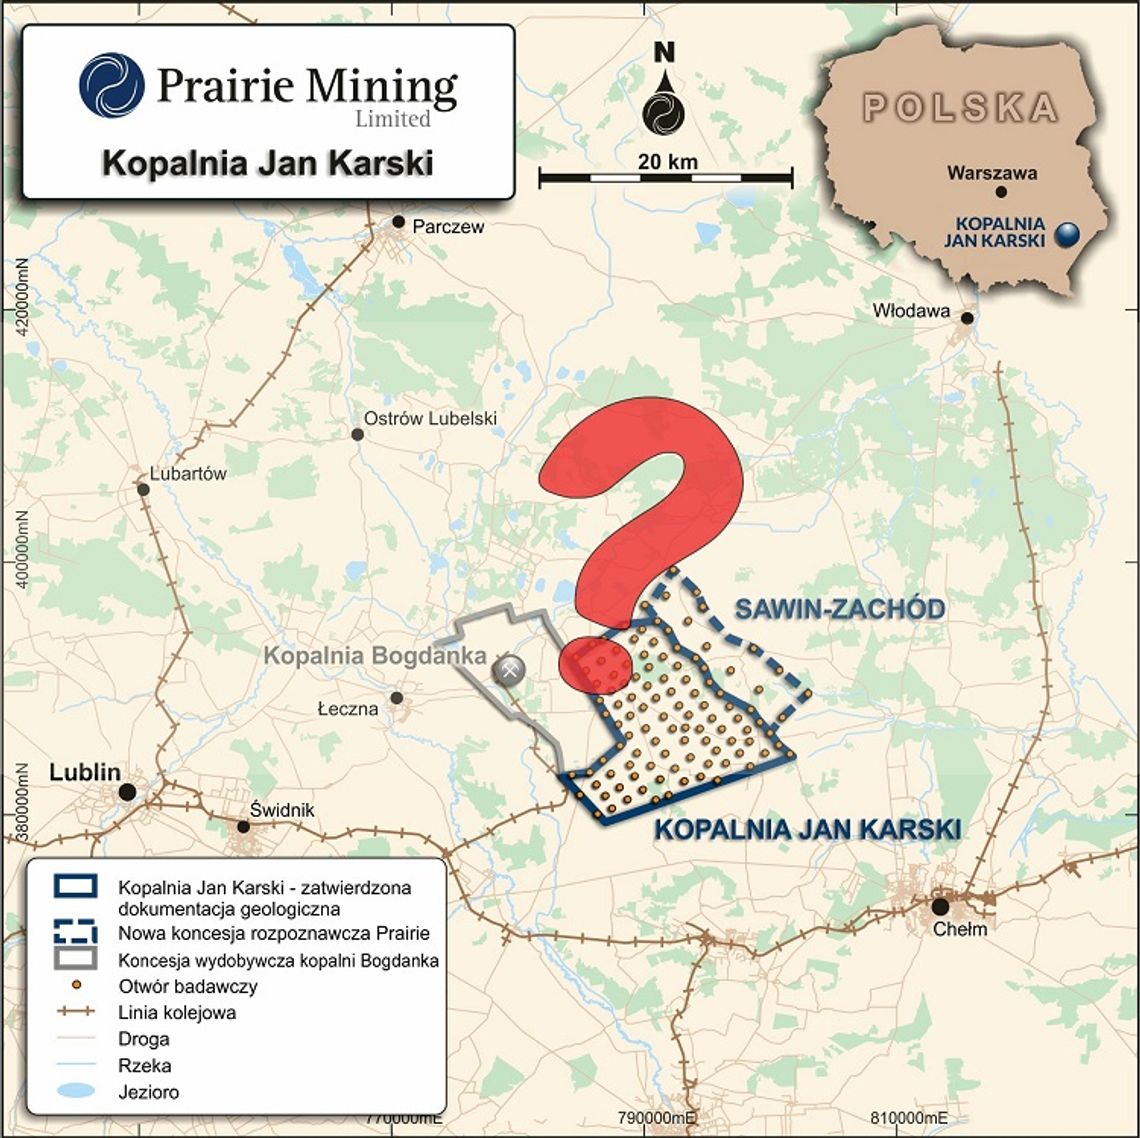 Sprawa kopalni Jan Karski trafiła do sądu. Prairie Mining pozywa polski rząd